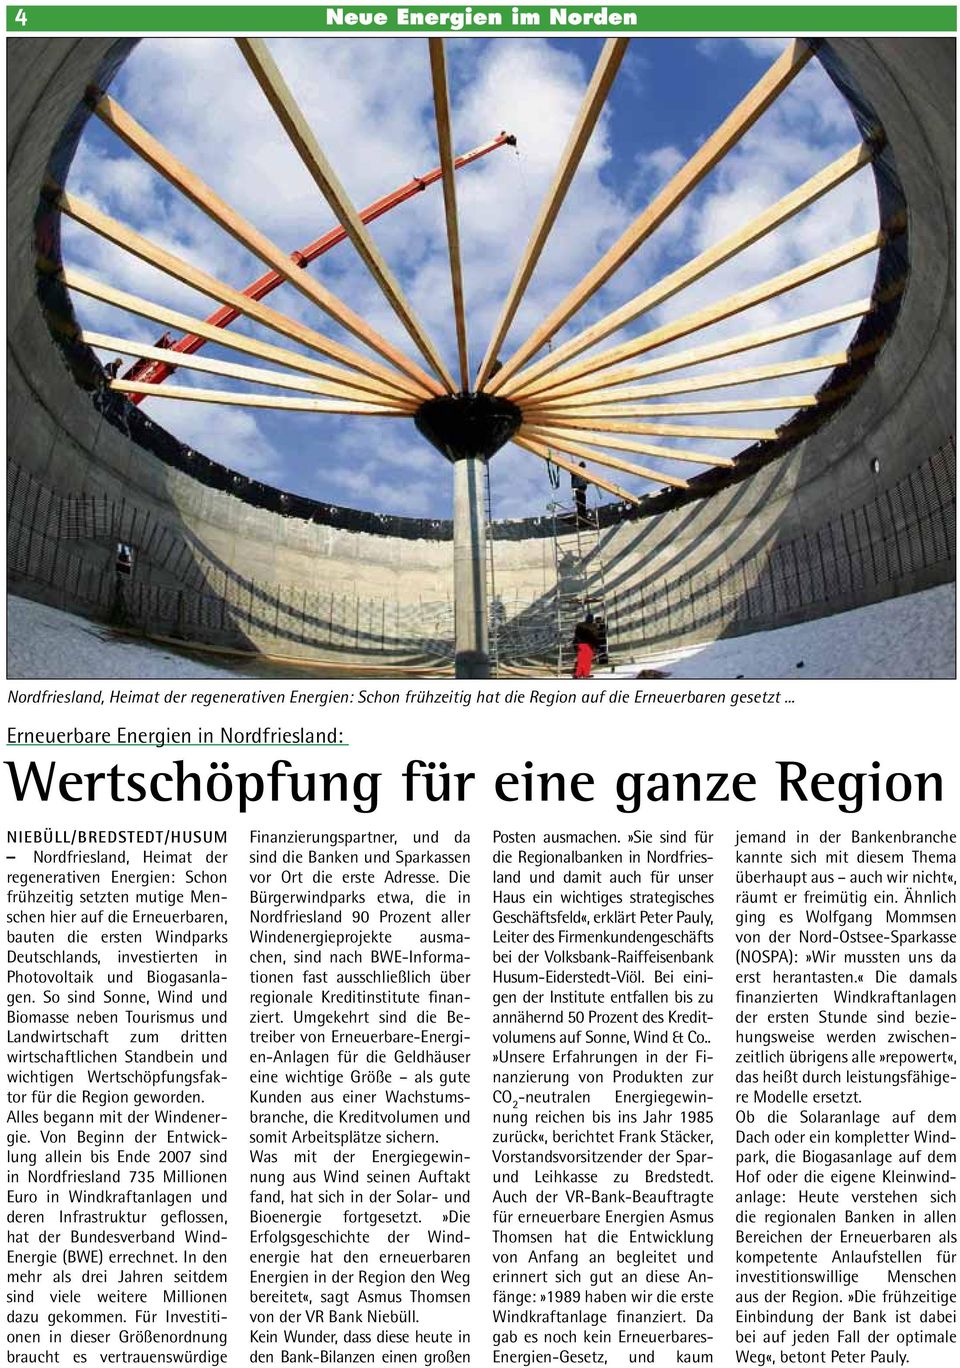 auf die Erneuerbaren, bauten die ersten Windparks Deutschlands, investierten in Photovoltaik und Biogasanlagen.